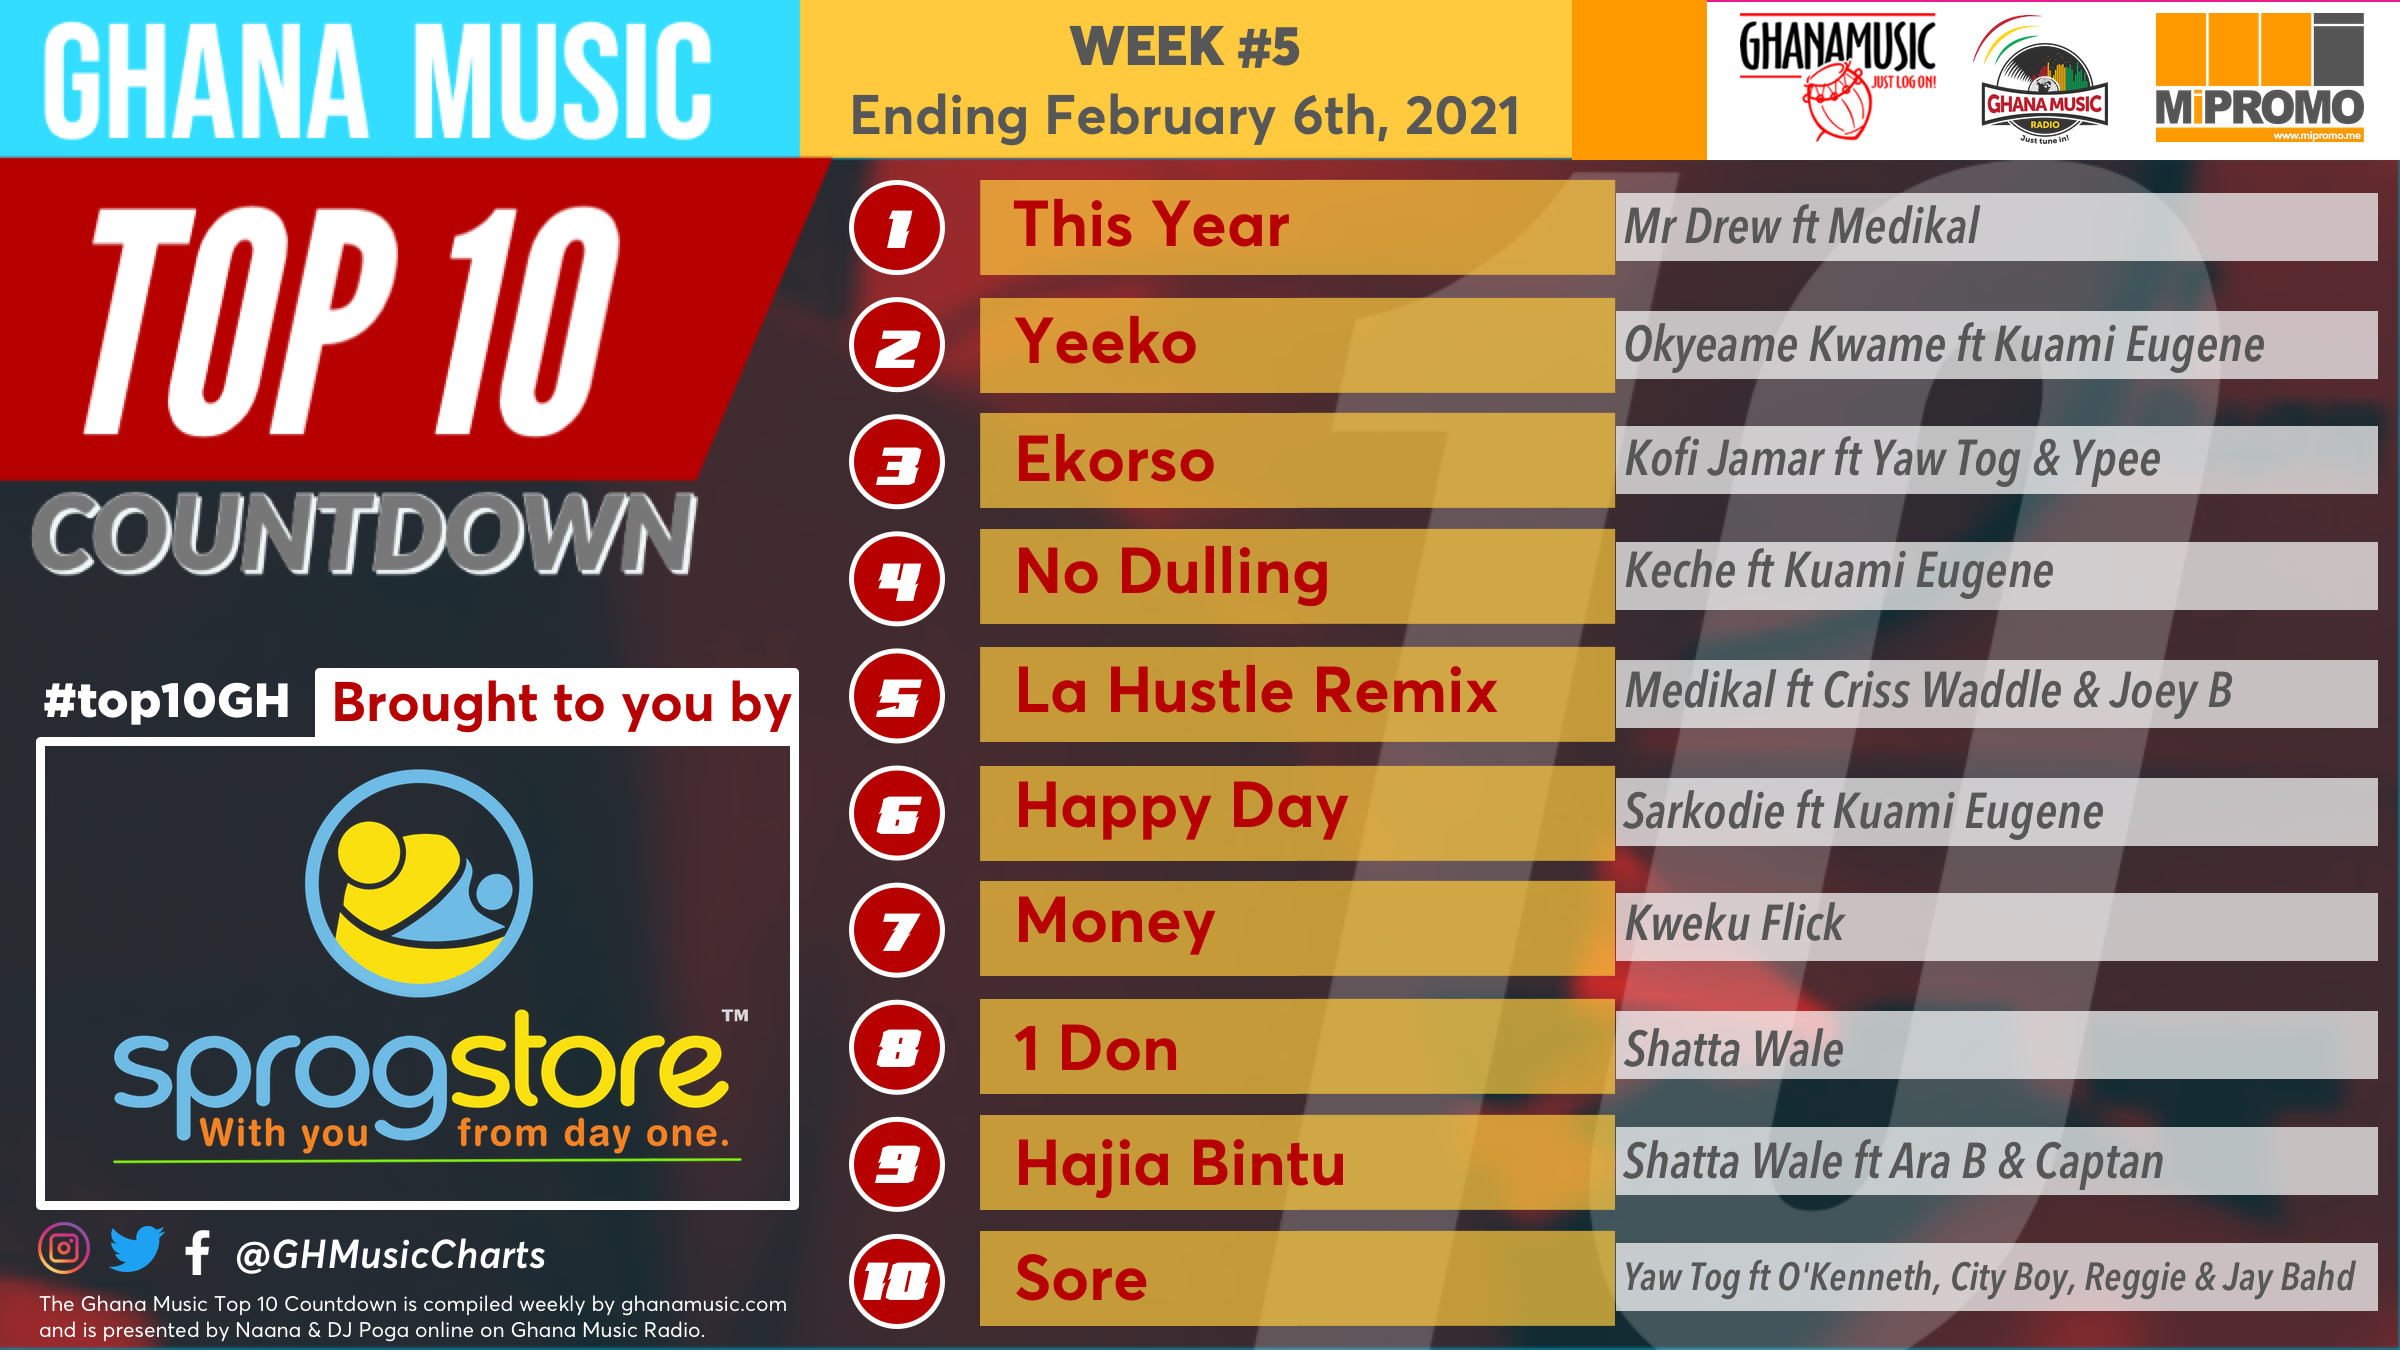 2021 Week 5: Ghana Music Top 10 Countdown